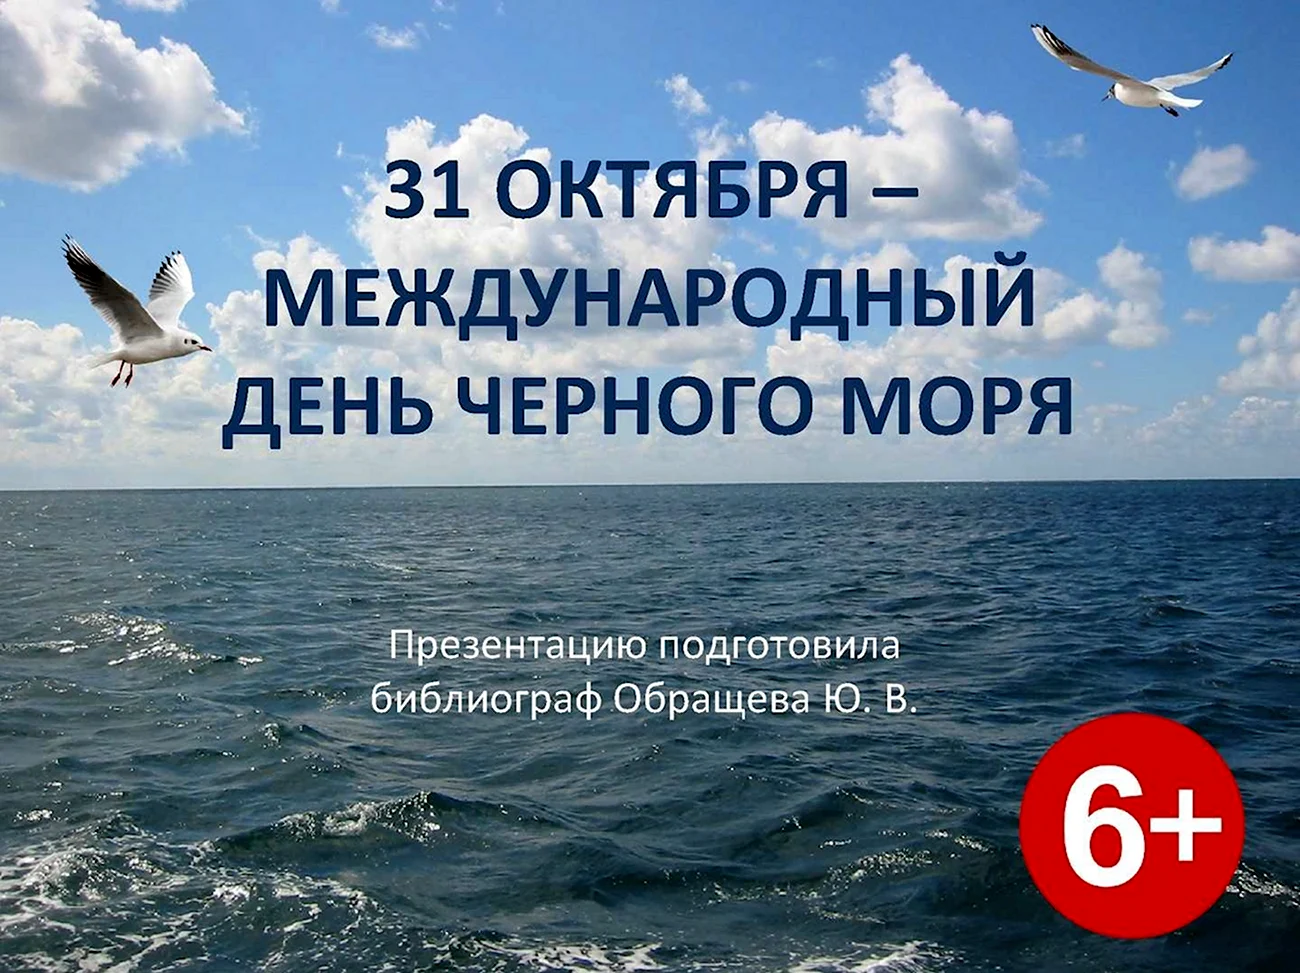 Международный день черного моря 31 октября. Поздравление